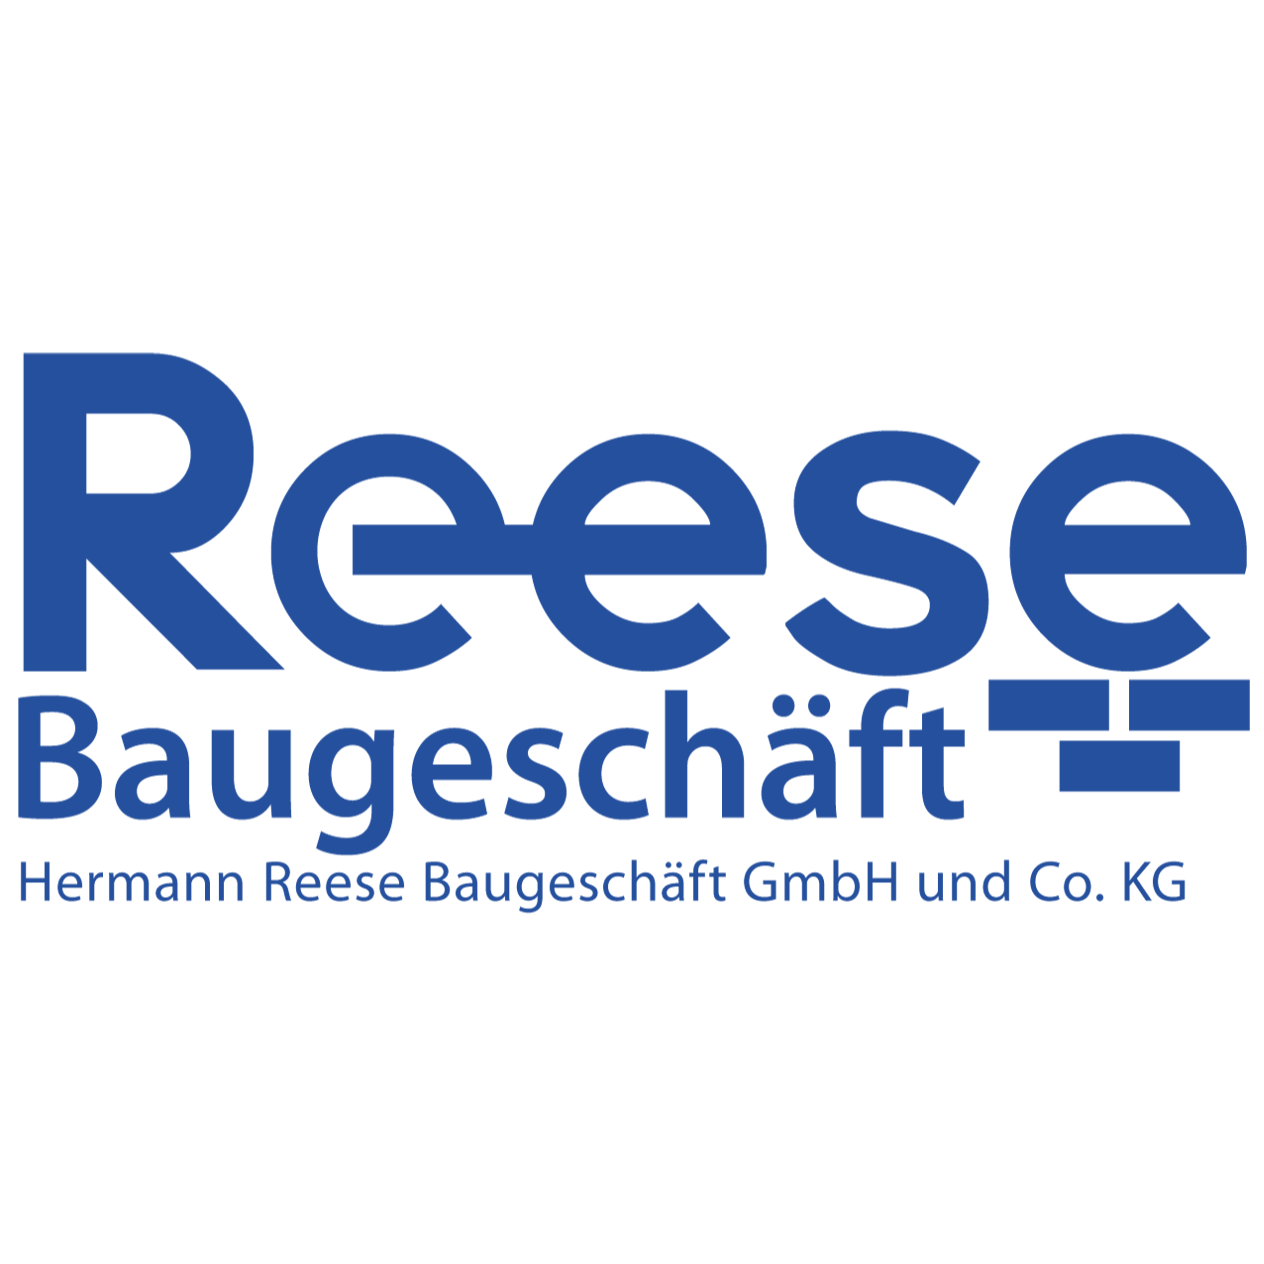 Hermann Reese Baugeschäft GmbH & Co. KG Logo